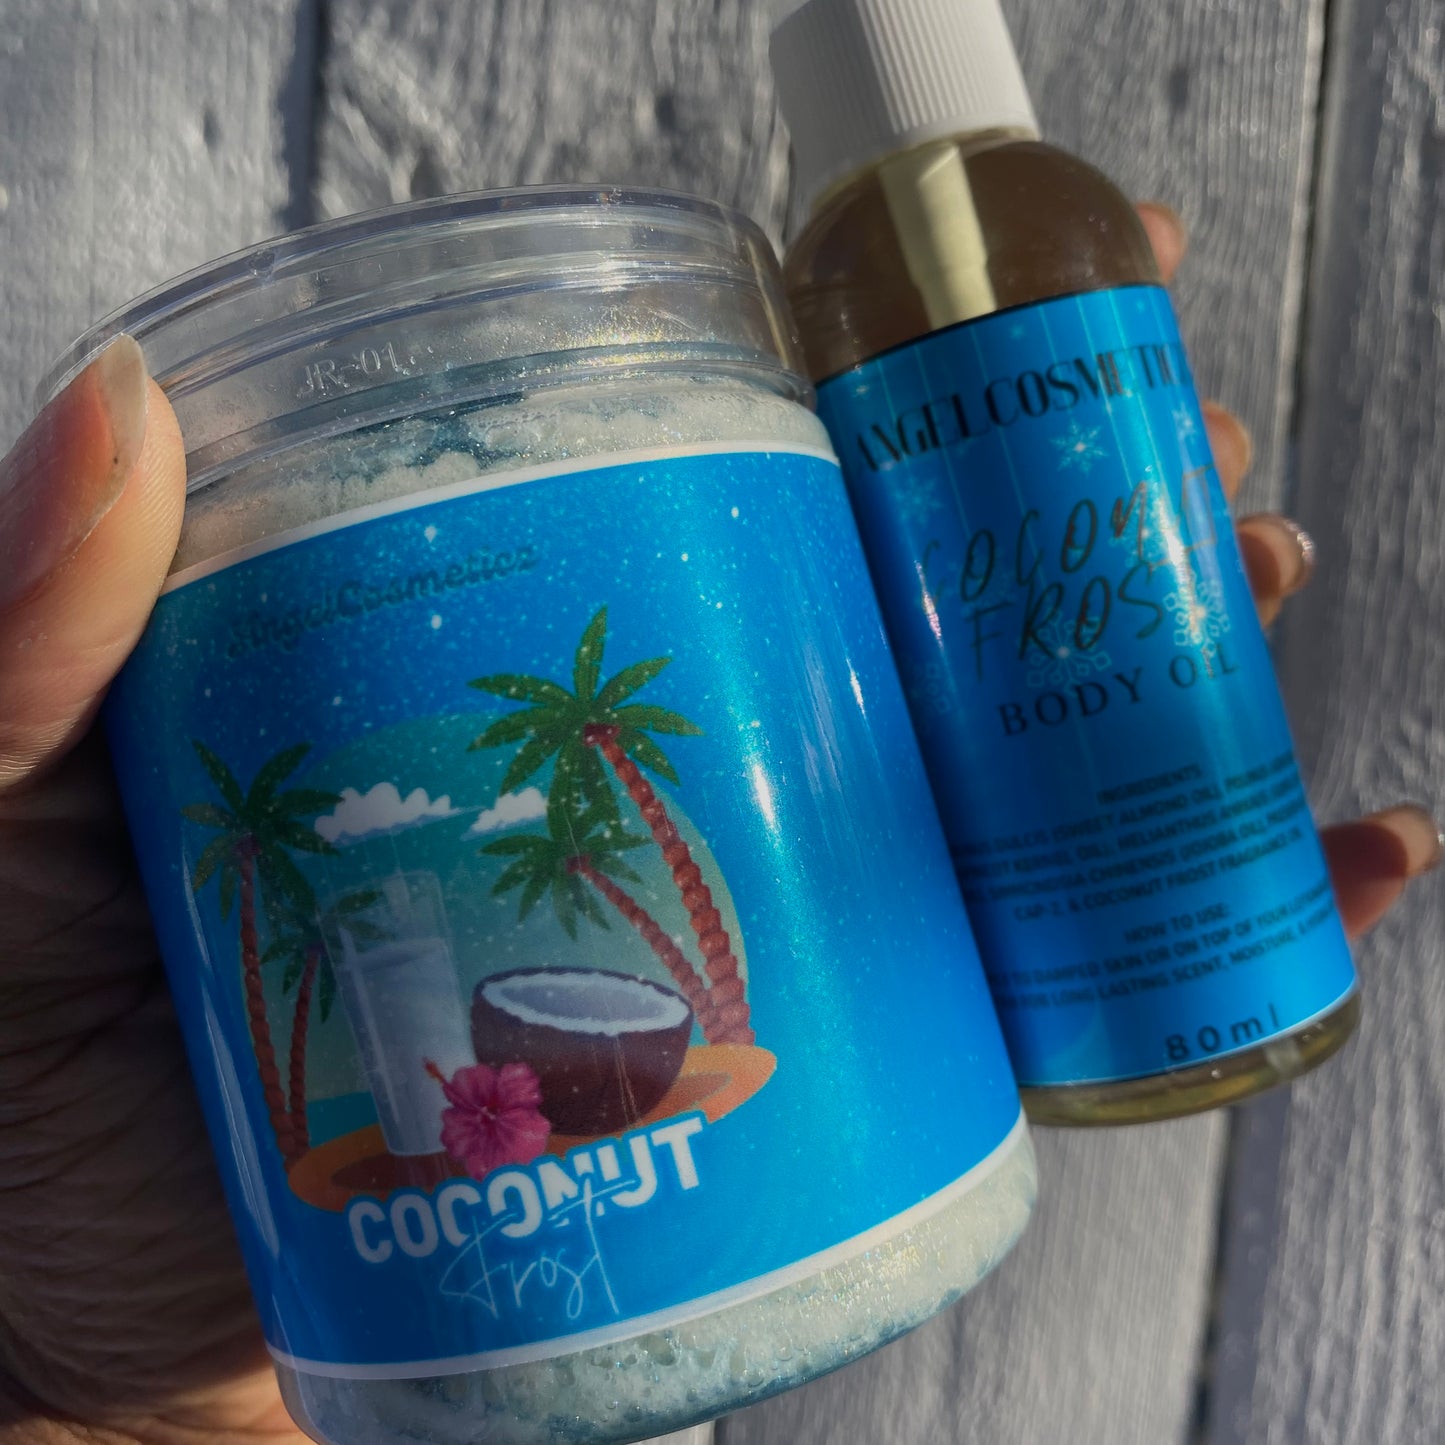 Coconut Frost Body Butter & Body Oil Set